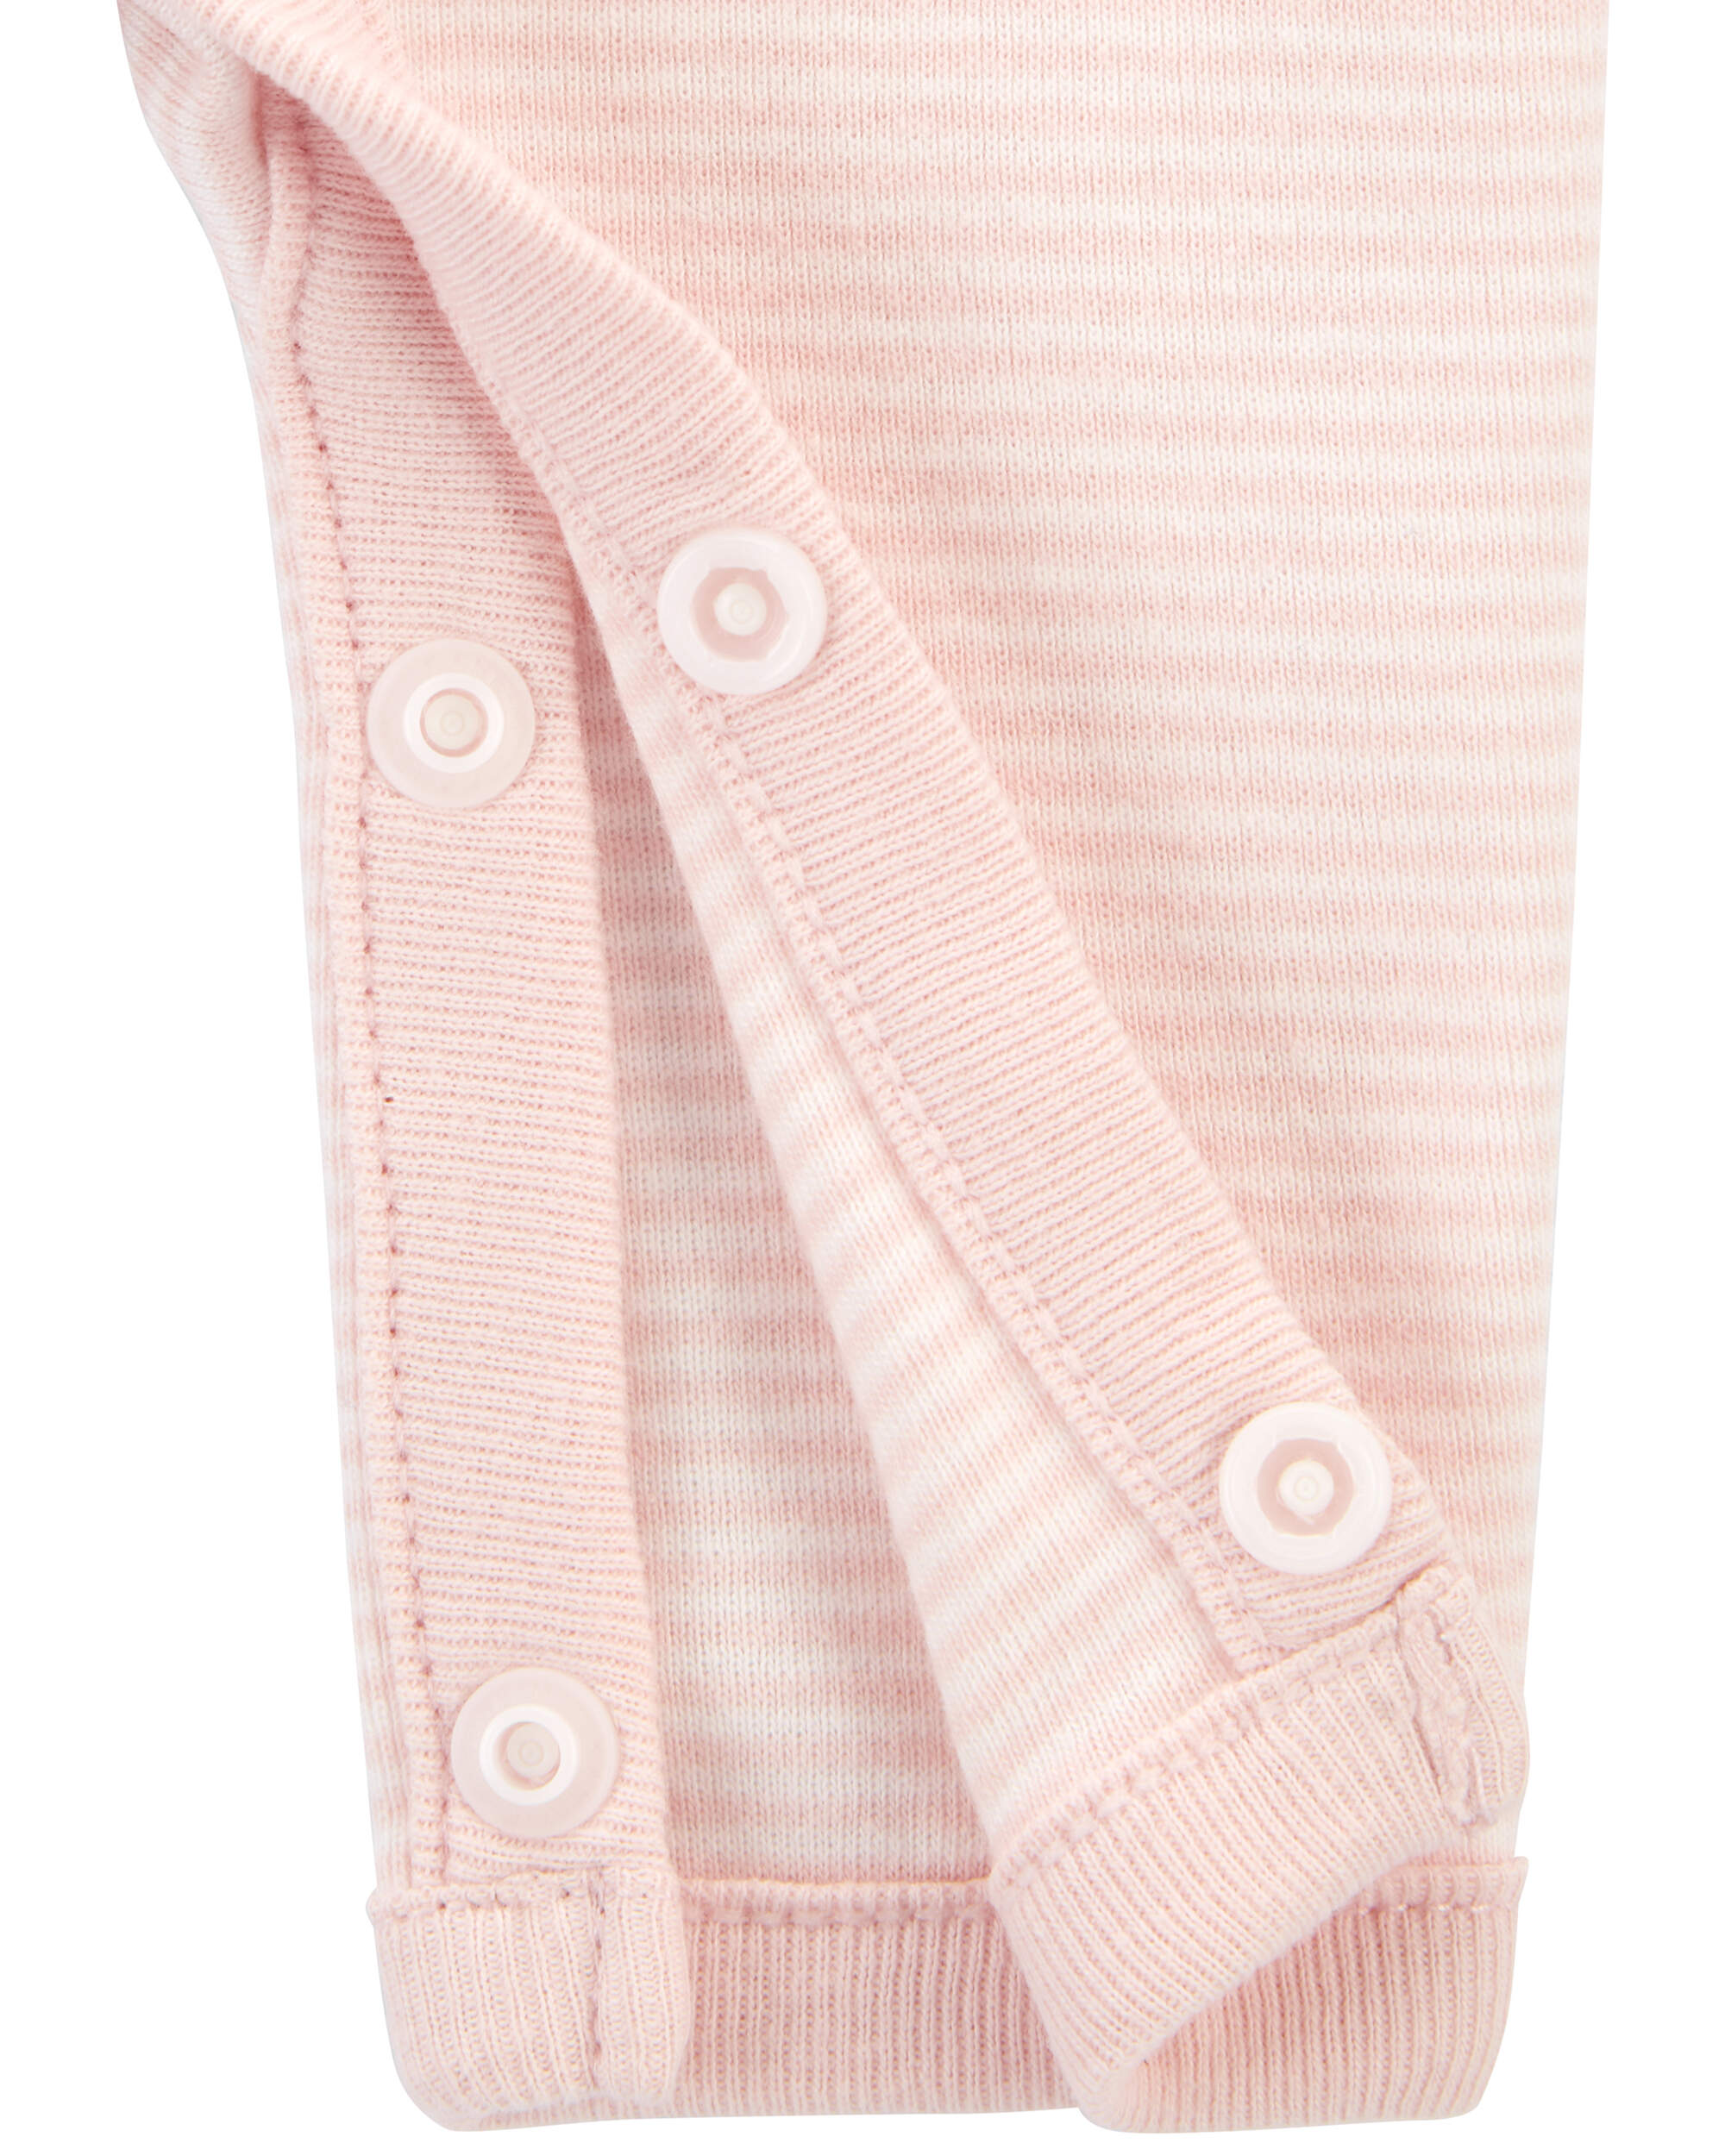 Baby Preemie Striped Cotton Sleeper Pyjamas